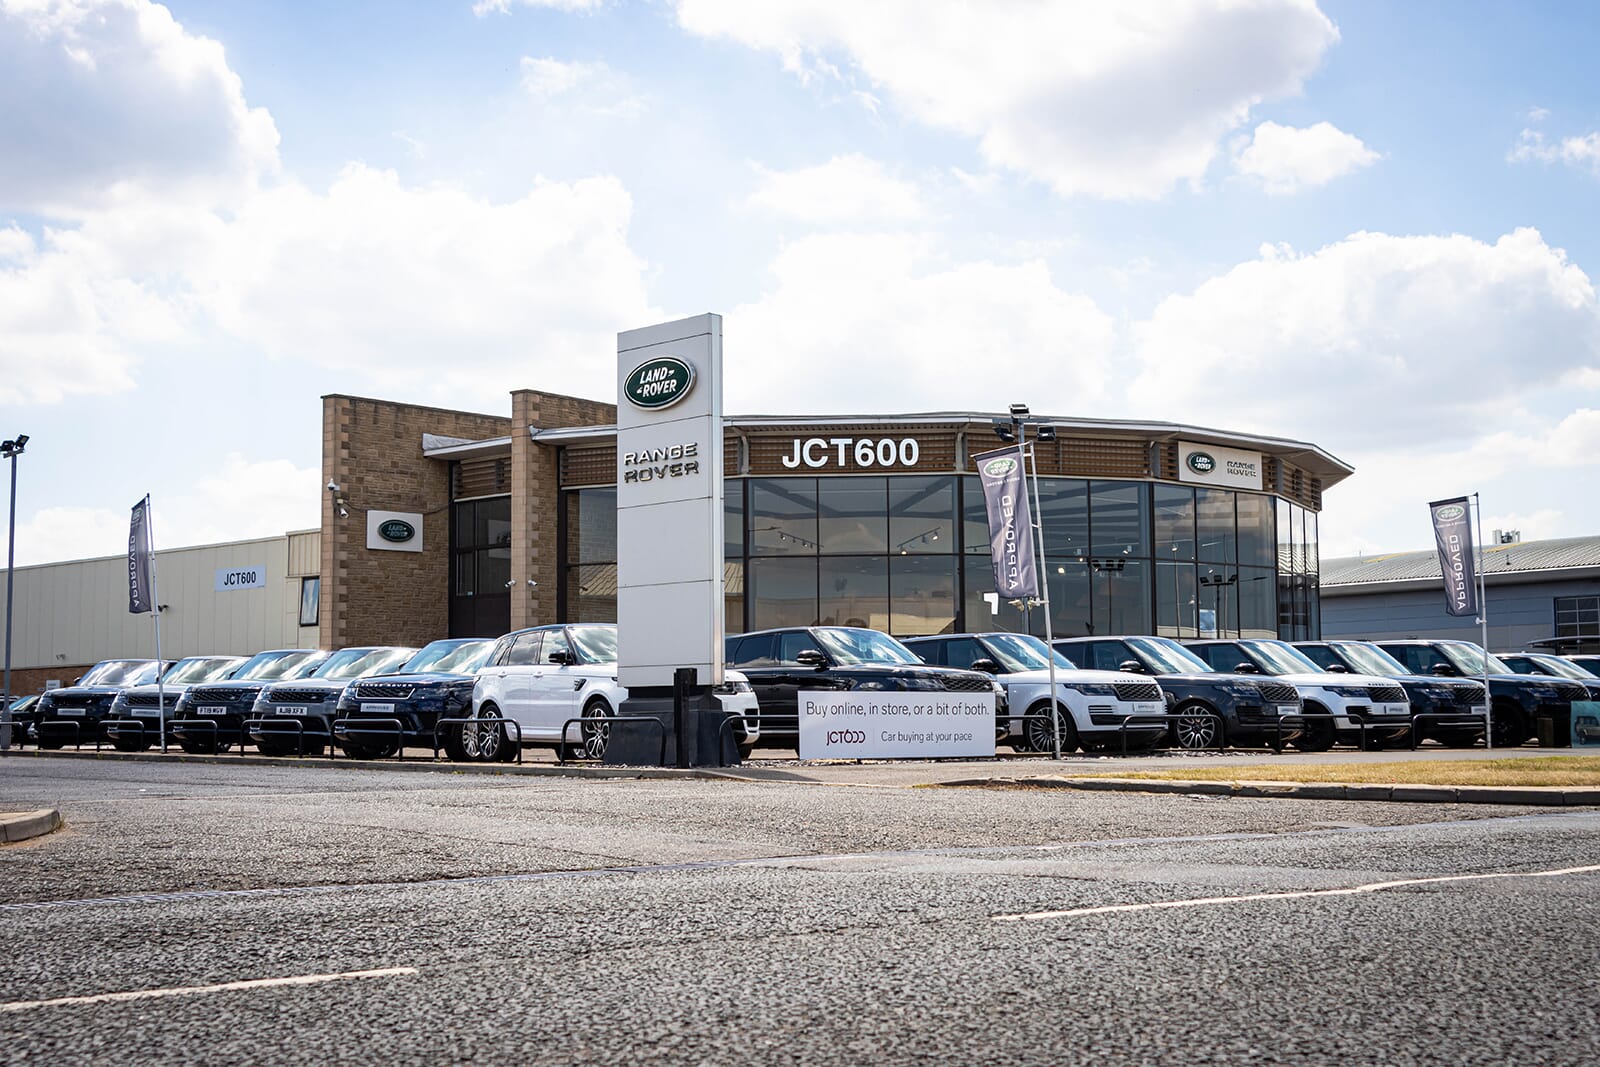 Land Rover Doncaster Approved Dealer – JCT600